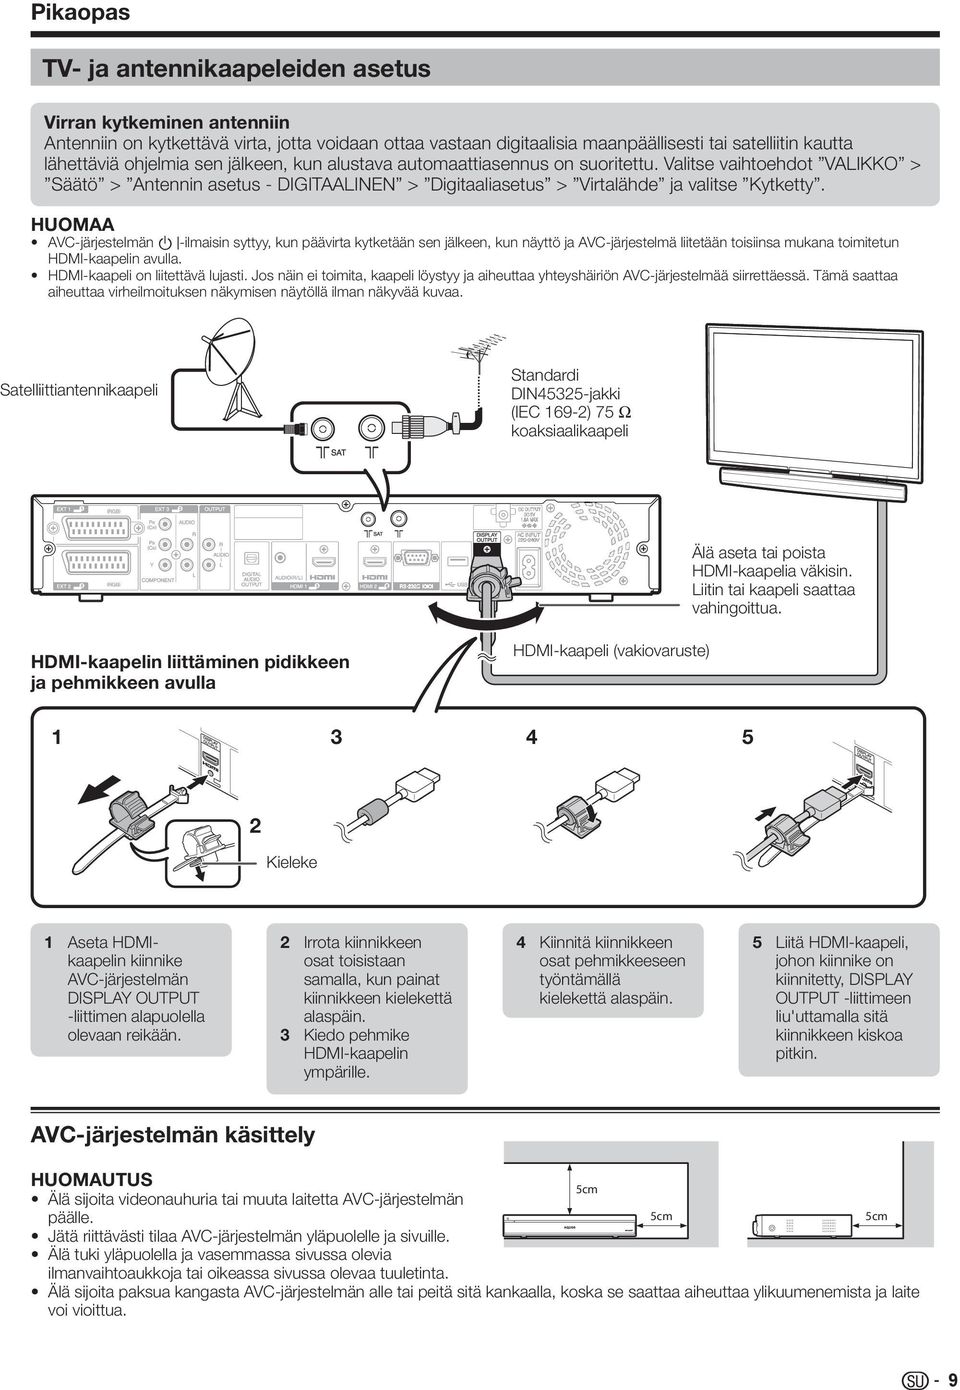 AVC-järjestelmän B-ilmaisin syttyy, kun päävirta kytketään sen jälkeen, kun näyttö ja AVC-järjestelmä liitetään toisiinsa mukana toimitetun HDMI-kaapelin avulla. HDMI-kaapeli on liitettävä lujasti.